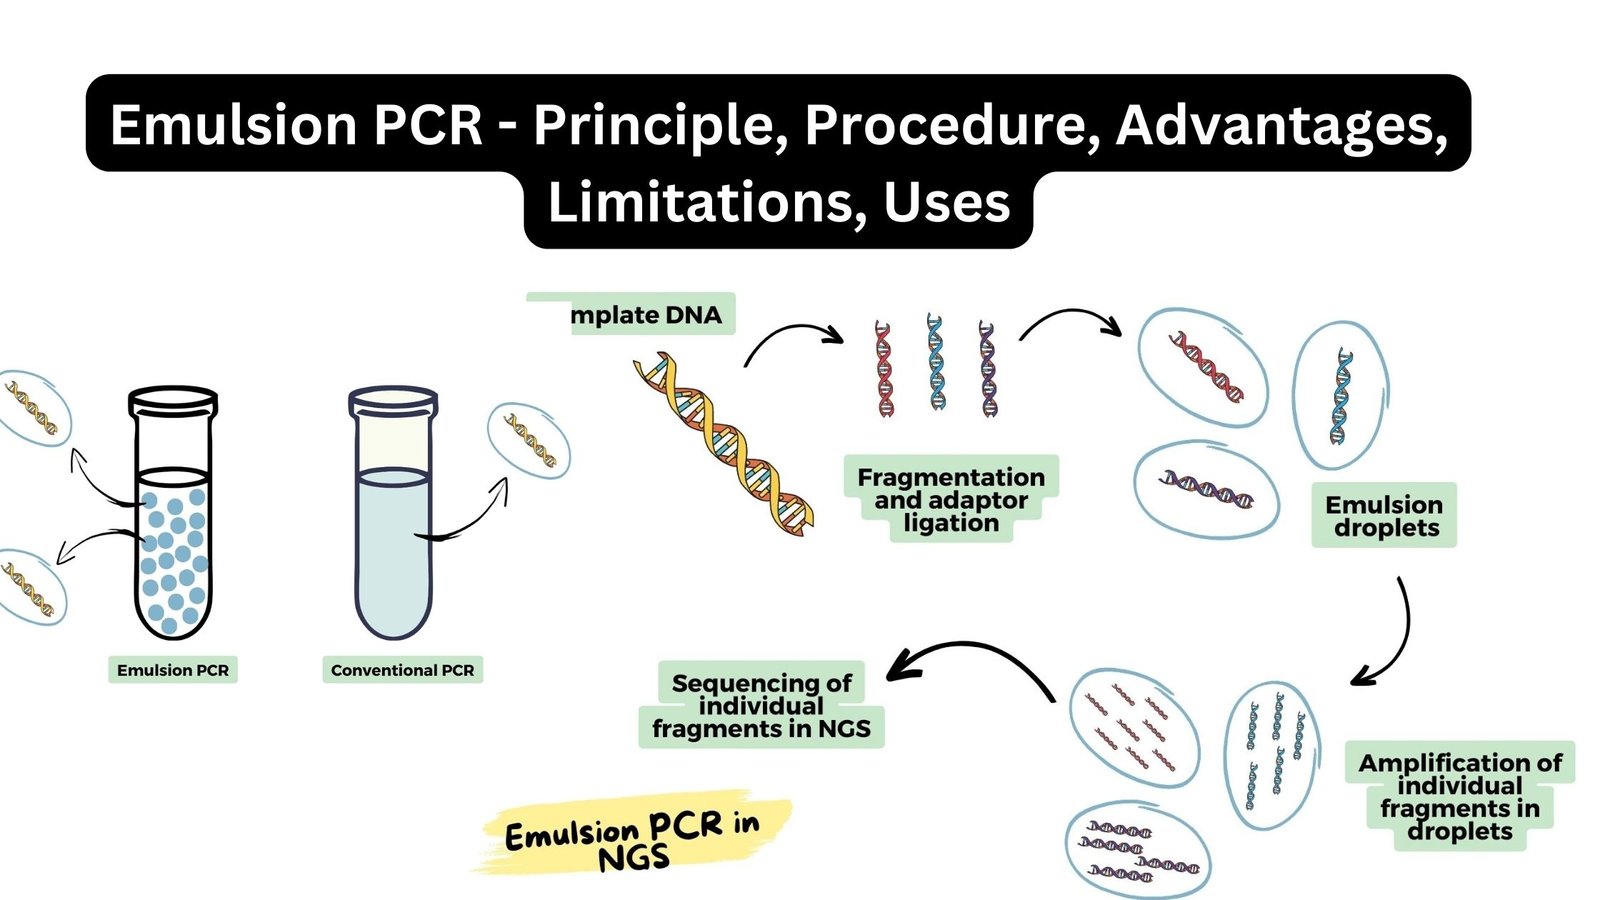 Emulsion PCR - Principle, Procedure, Advantages, Limitations, Uses